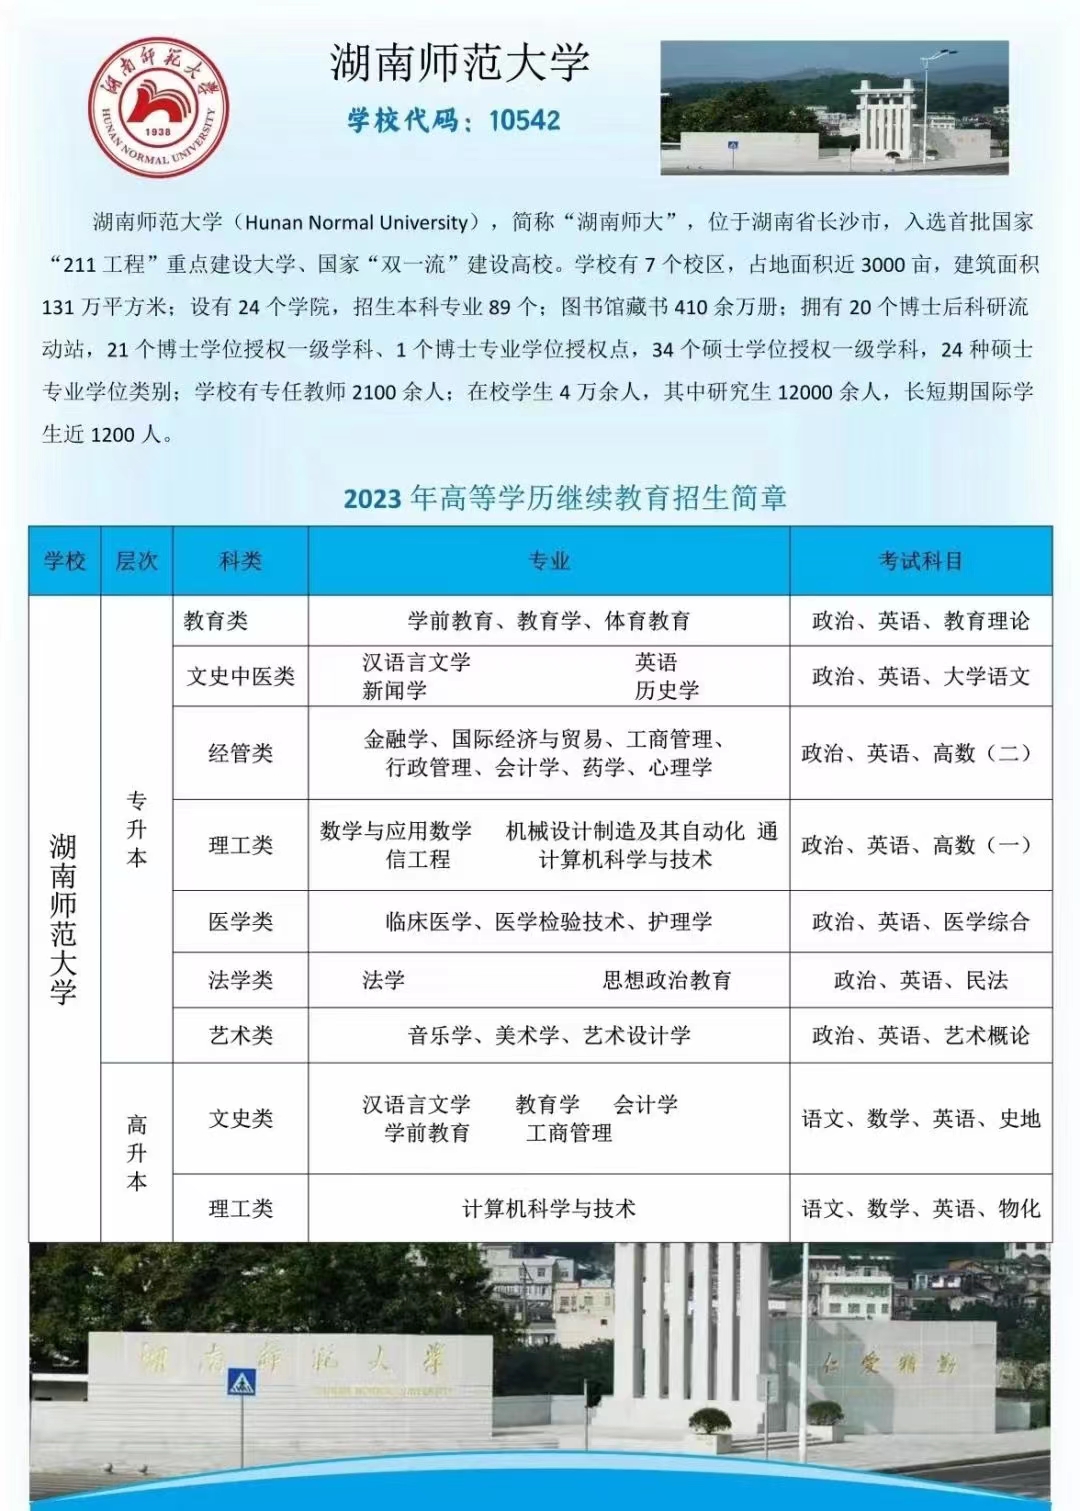 2023年湖南师范大学成人高考招生简章